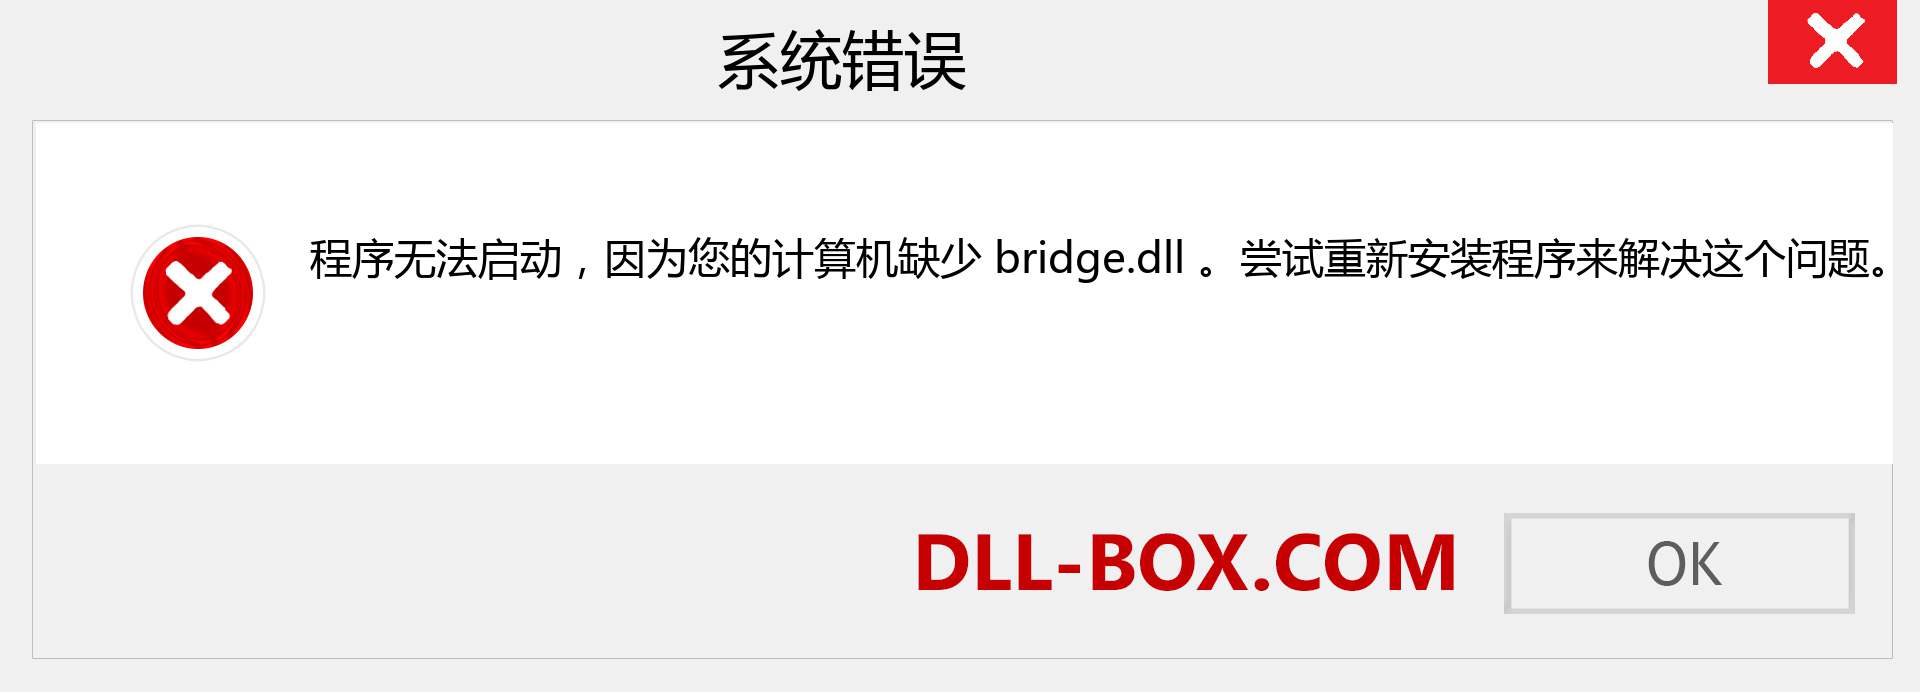 bridge.dll 文件丢失？。 适用于 Windows 7、8、10 的下载 - 修复 Windows、照片、图像上的 bridge dll 丢失错误